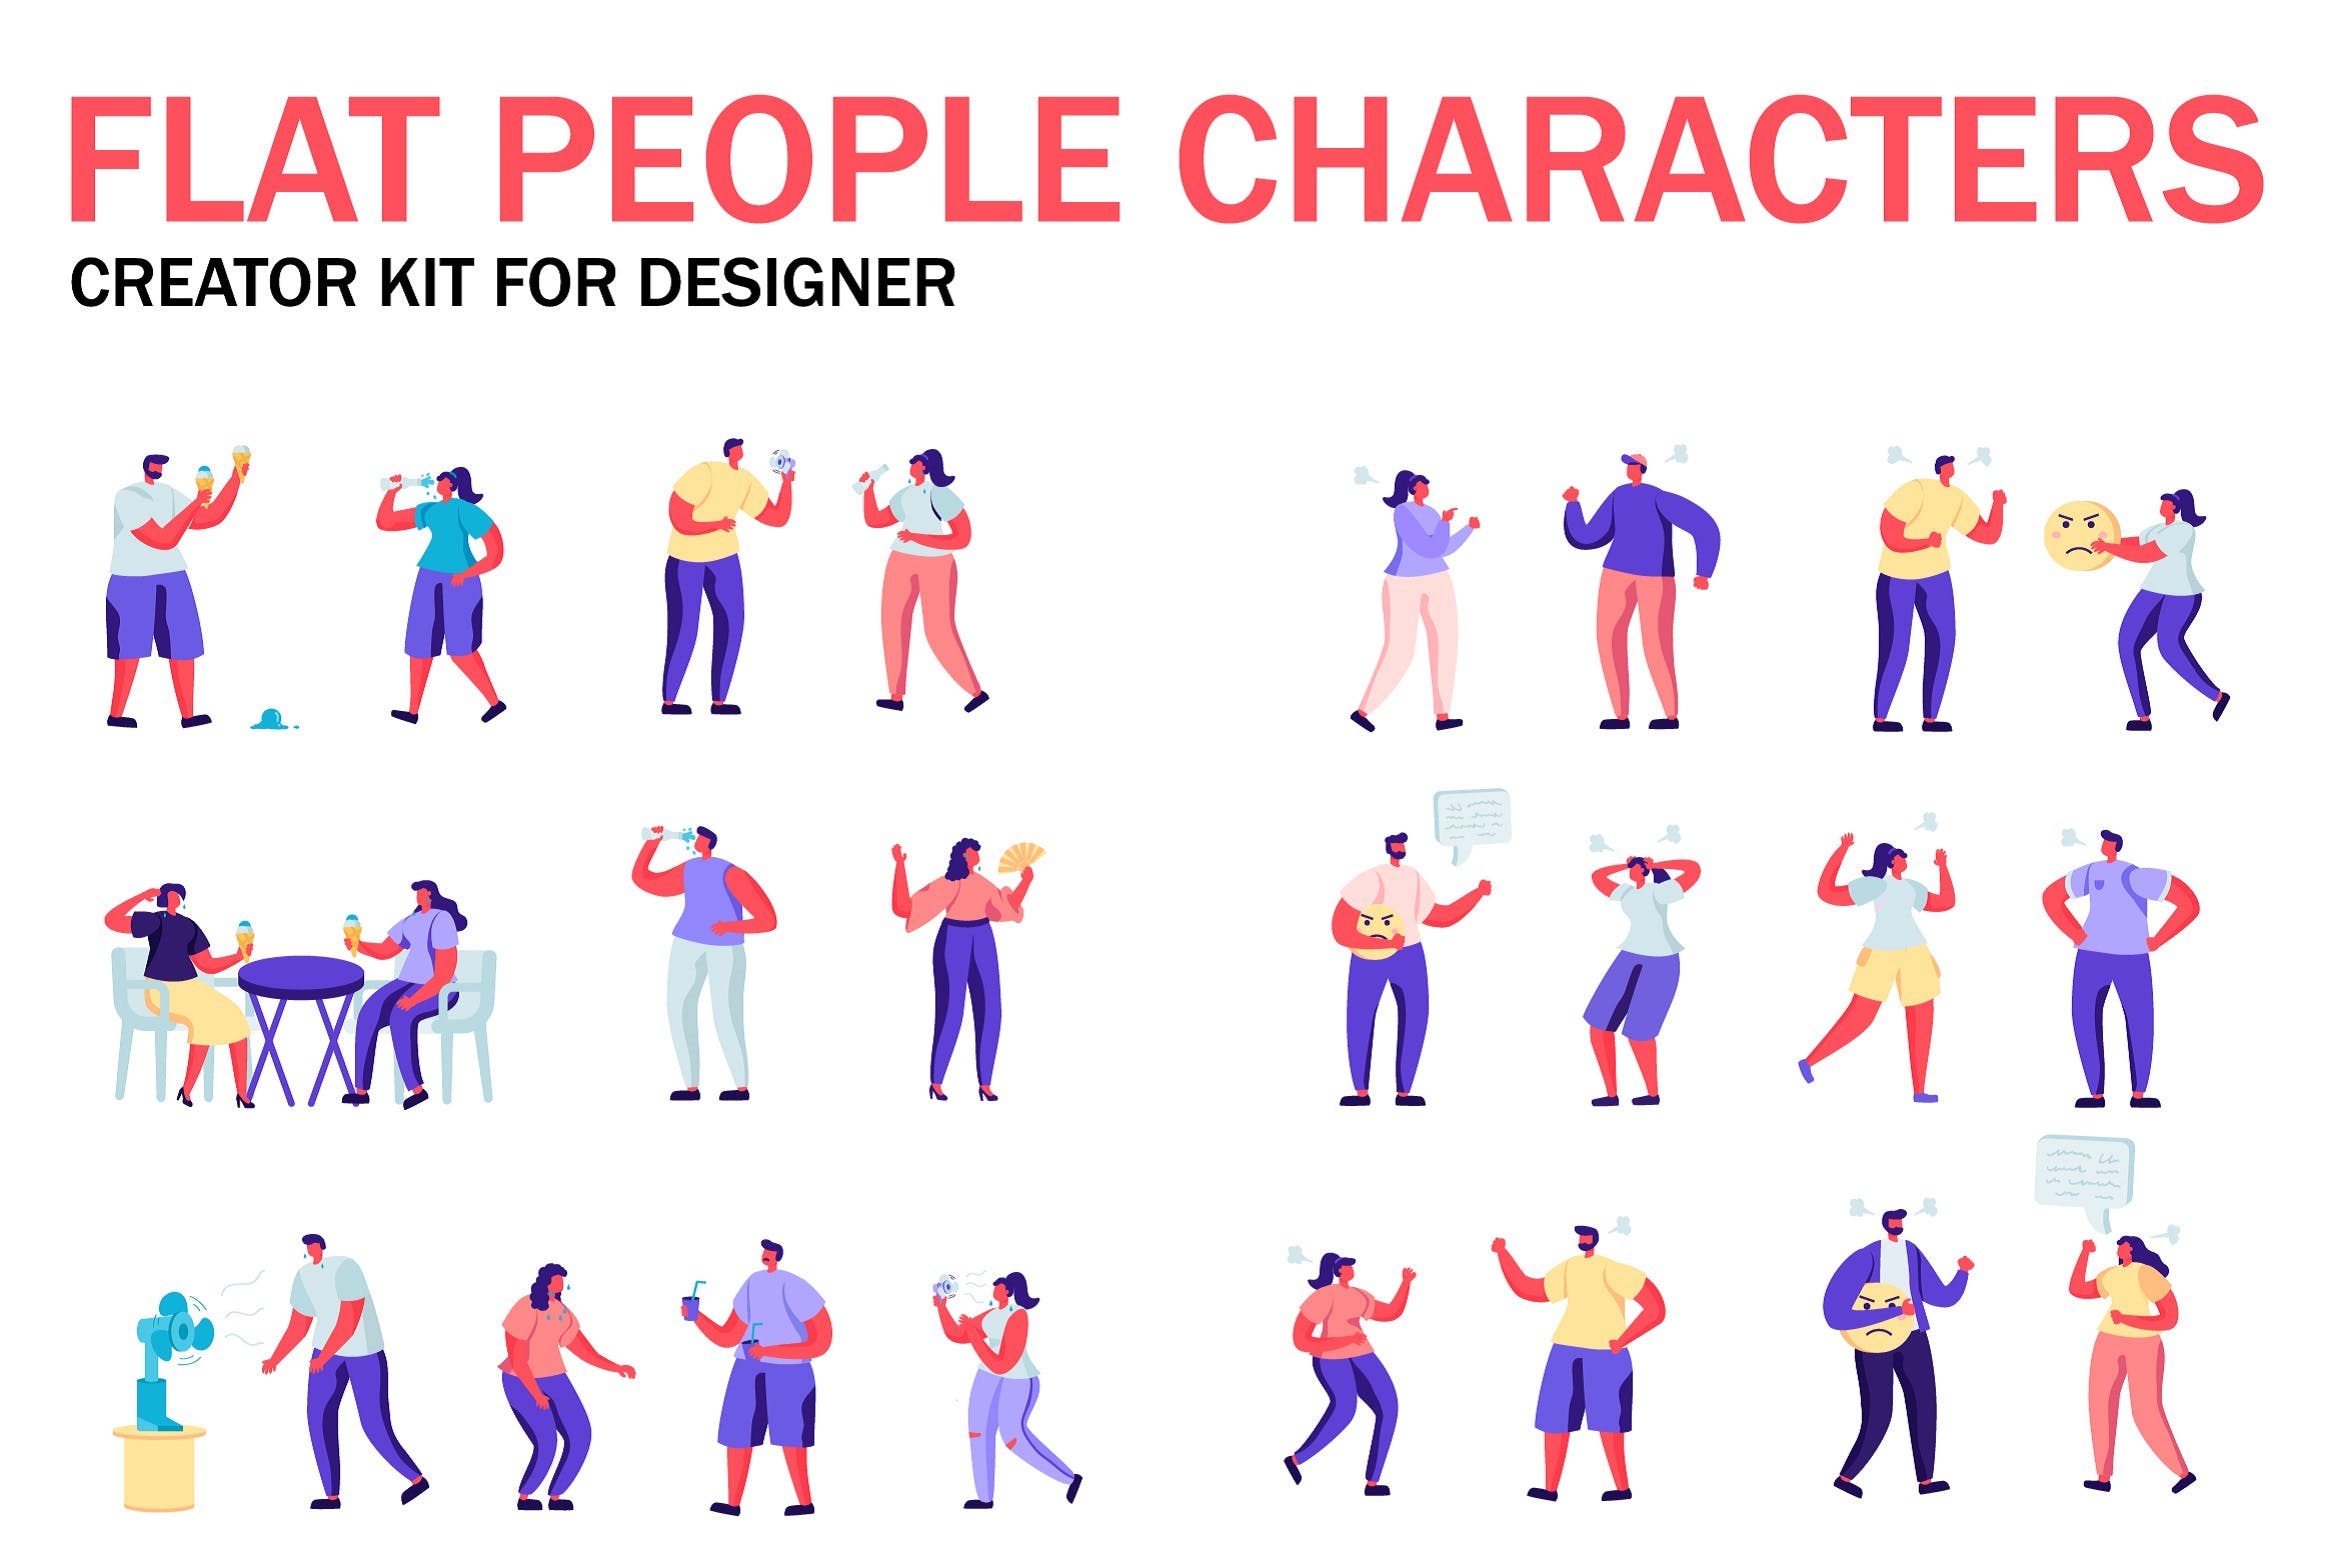 扁平化设计风格虚拟人物角色图形设计工具包v5 Flat People Character Creator Kit插图